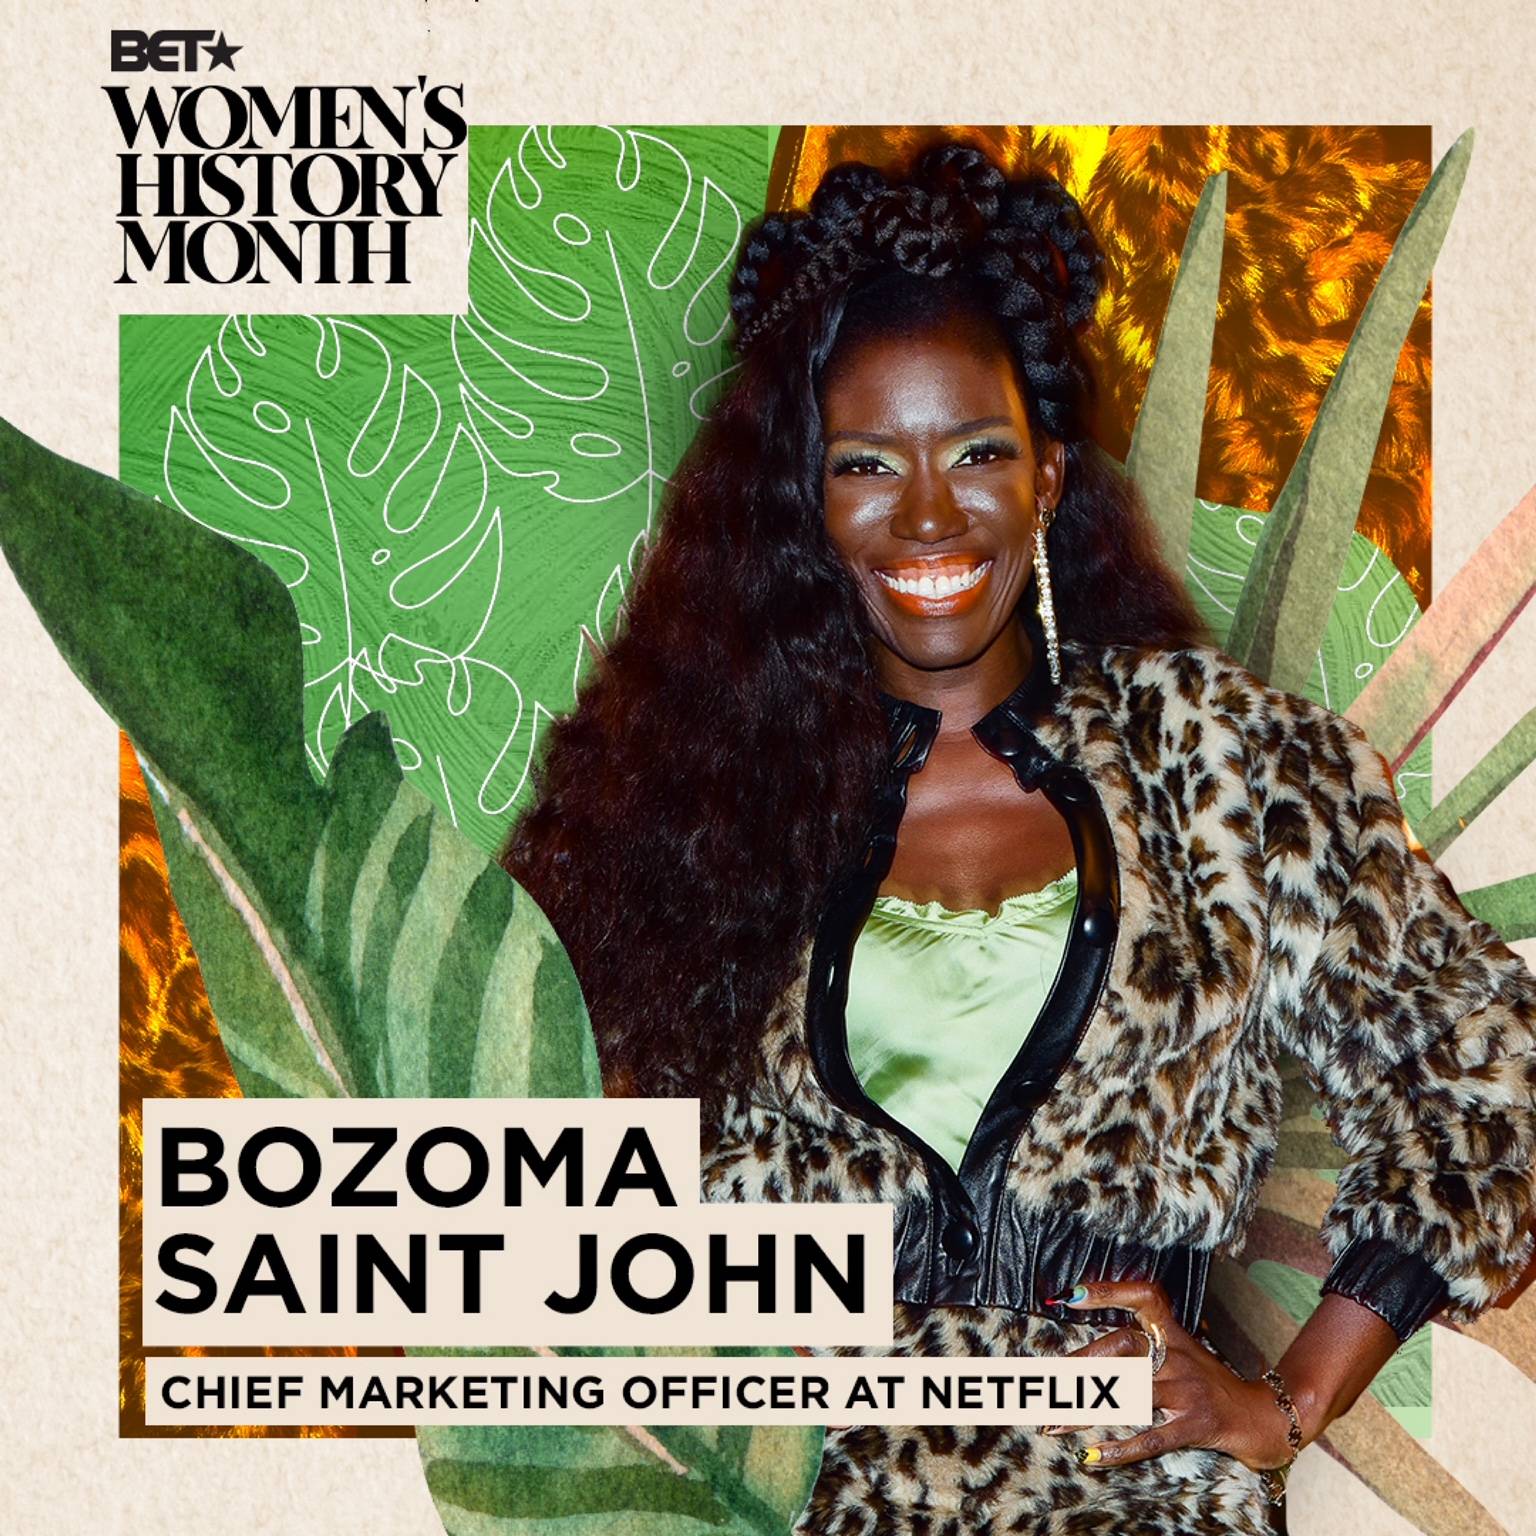 Bozoma Saint John on BET Buzz 2021.